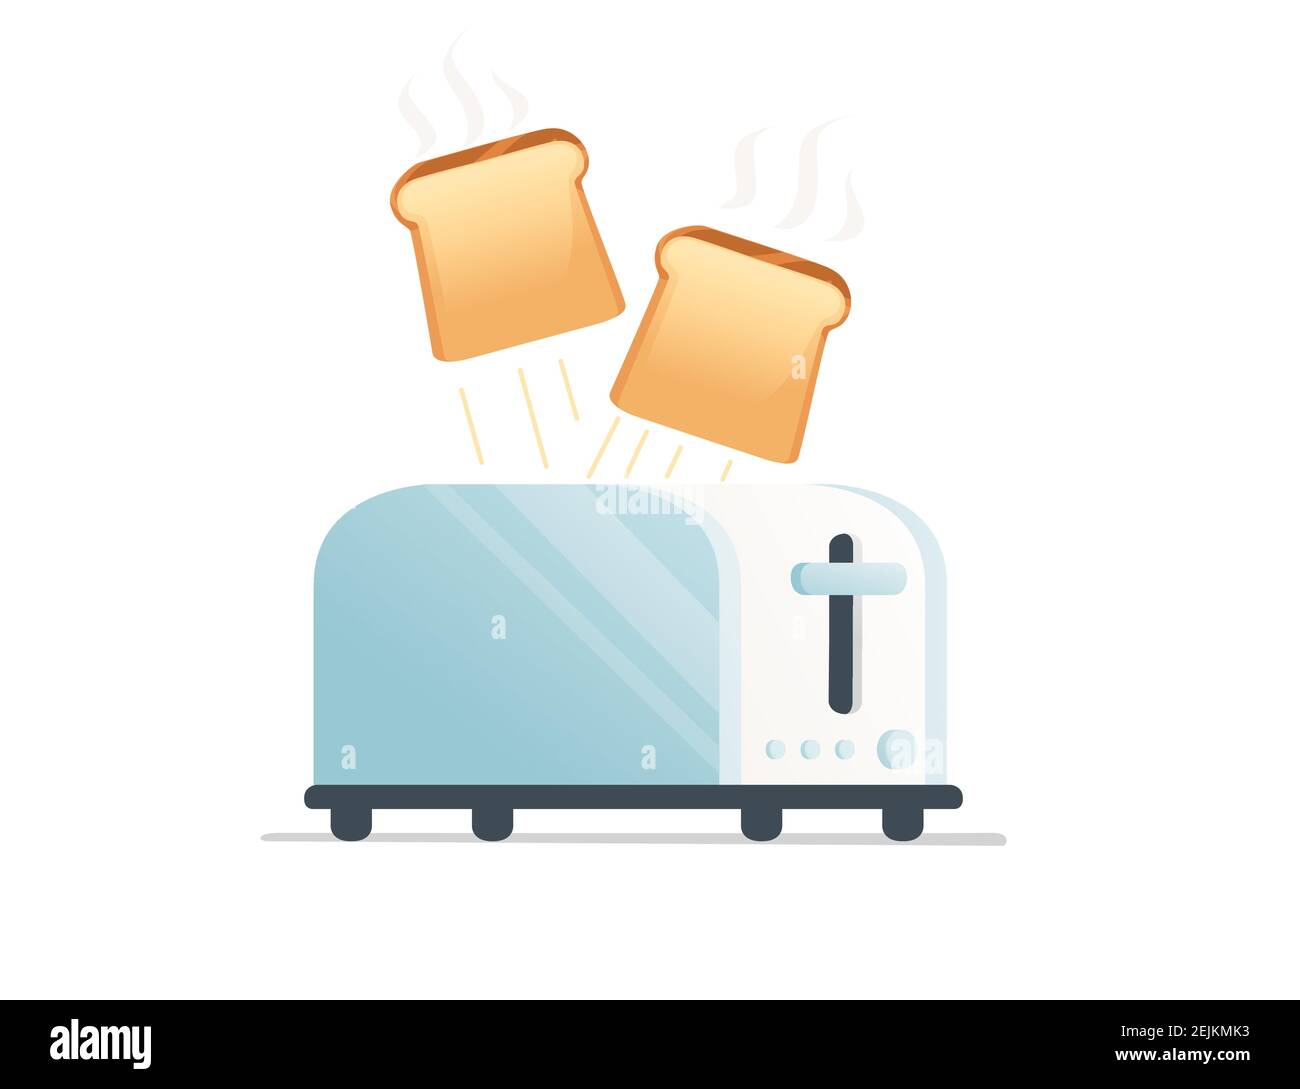 Grille-pain en métal brillant pour une utilisation à domicile avec pain grillé illustration vectorielle sur fond blanc Illustration de Vecteur